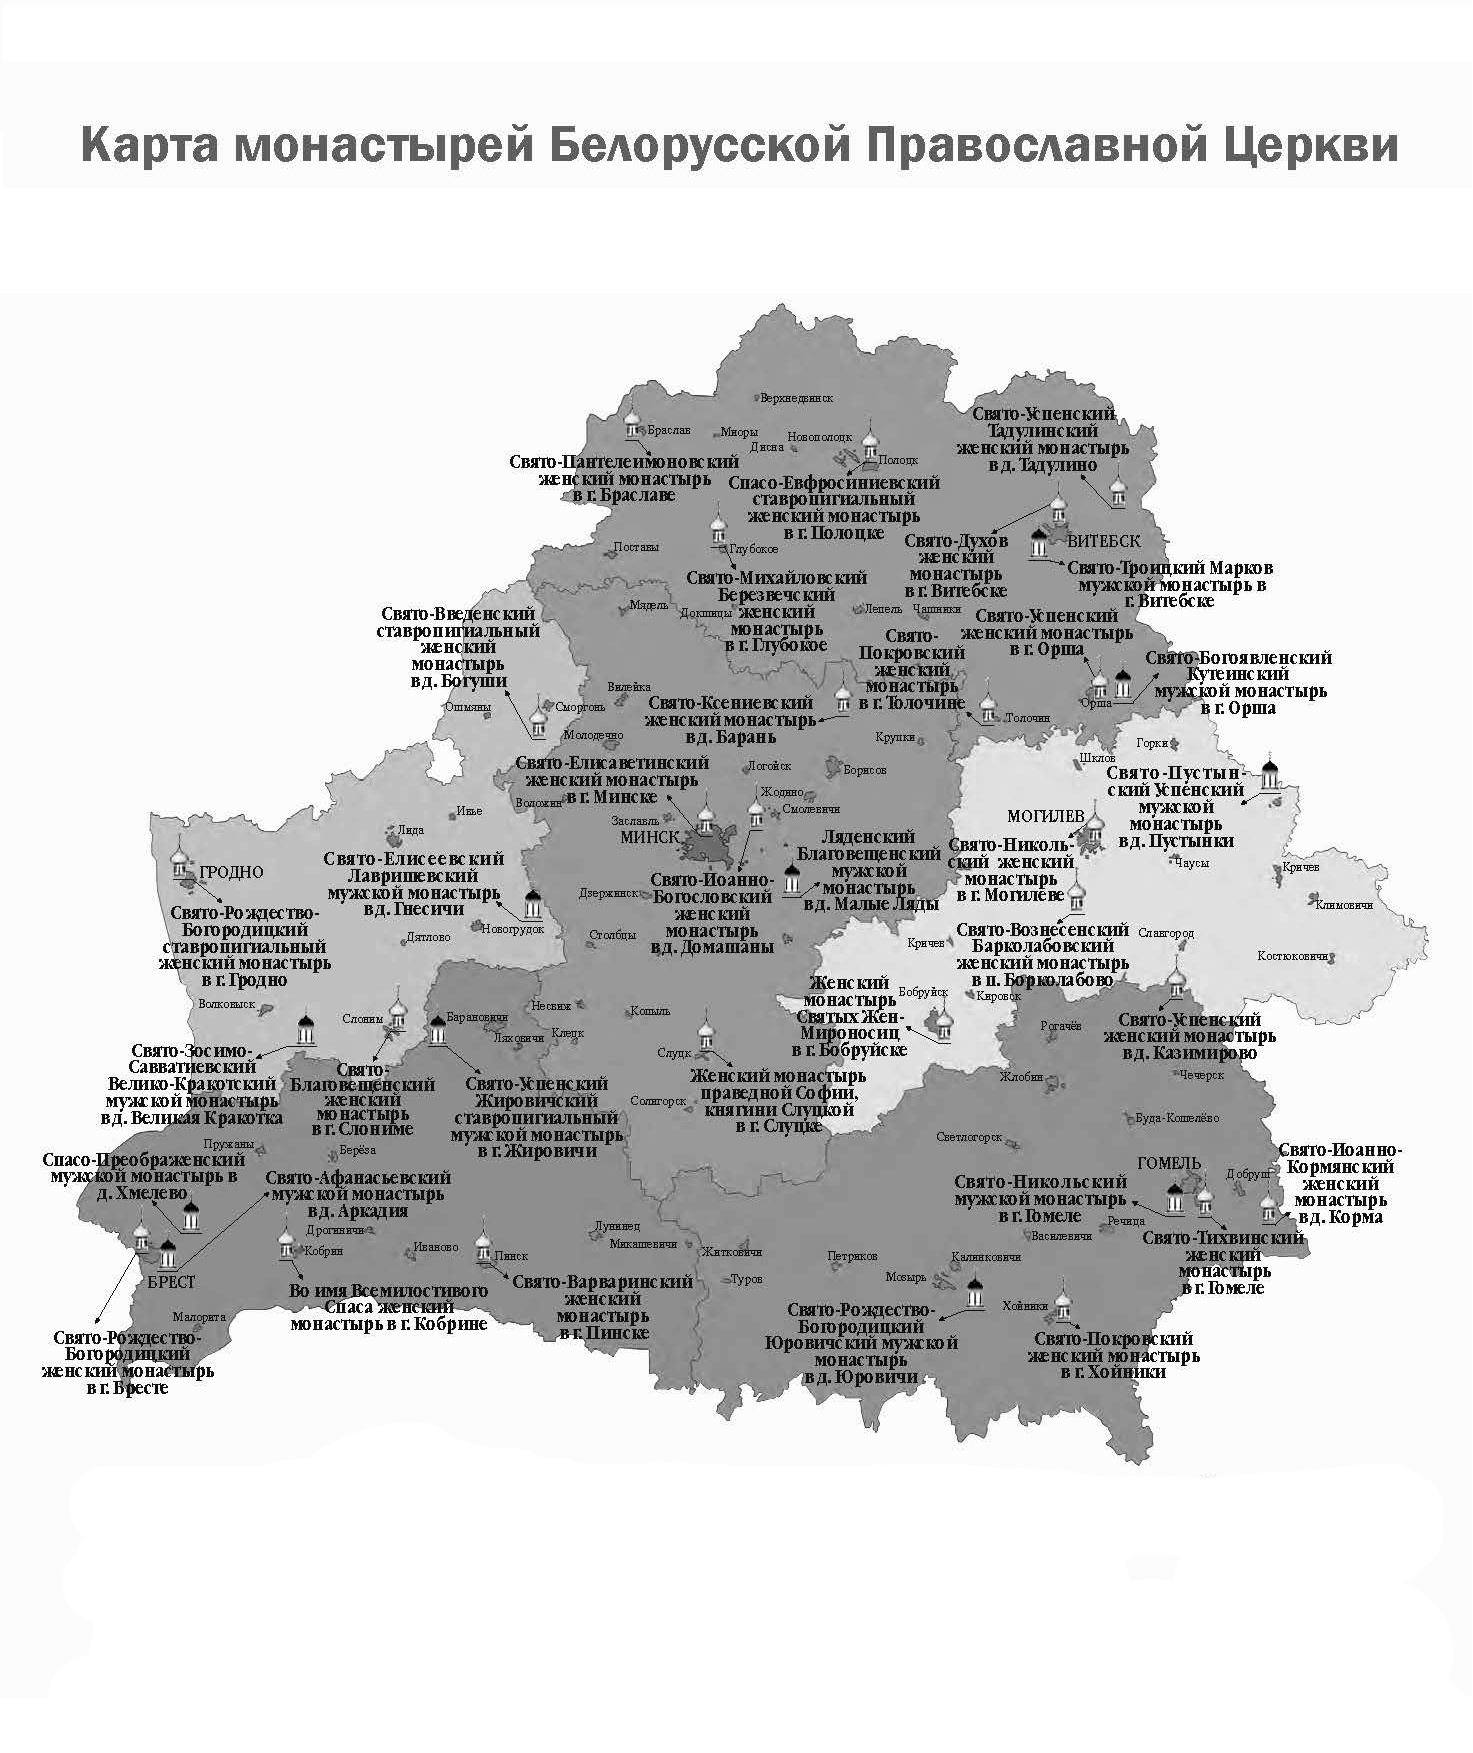 Карта монастырей Белорусской Православной Церкви